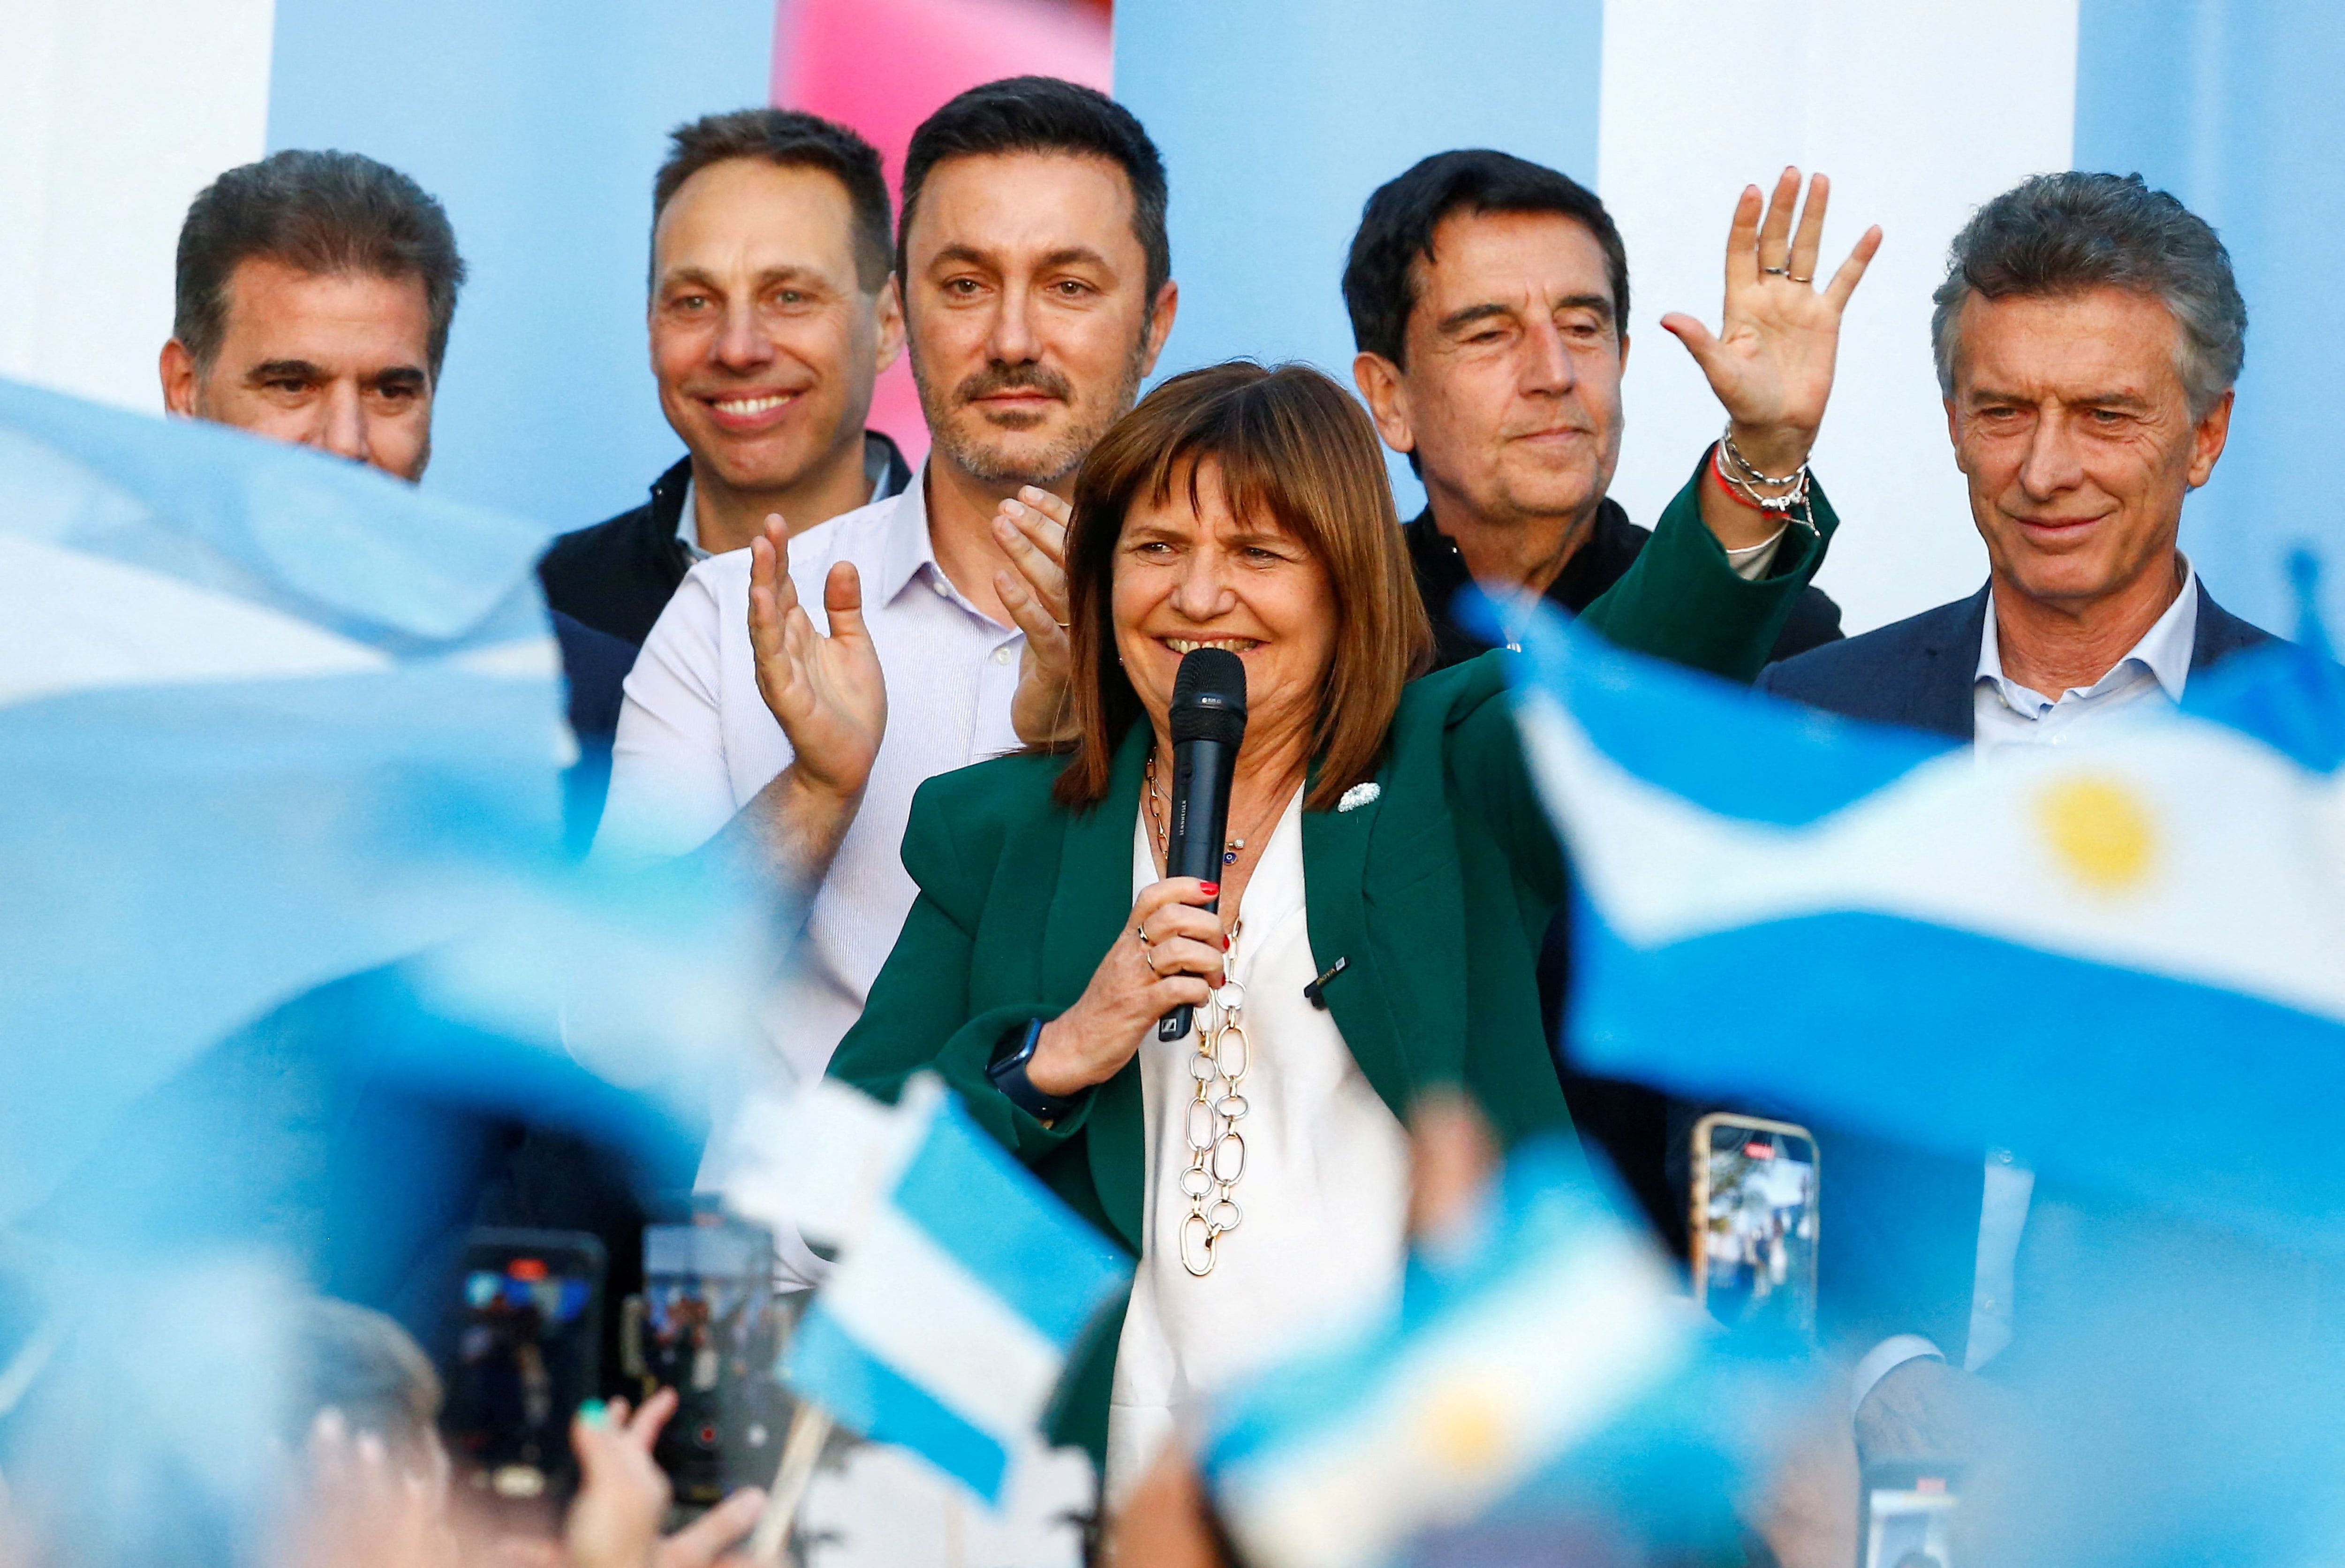 Patricia Bullrich, en el acto de cierre de campaña con Mauricio Macri, Luis Petri, Cristian Ritondo, Carlos Melconian y Guillermo Viñuales
(Foto Reuters)